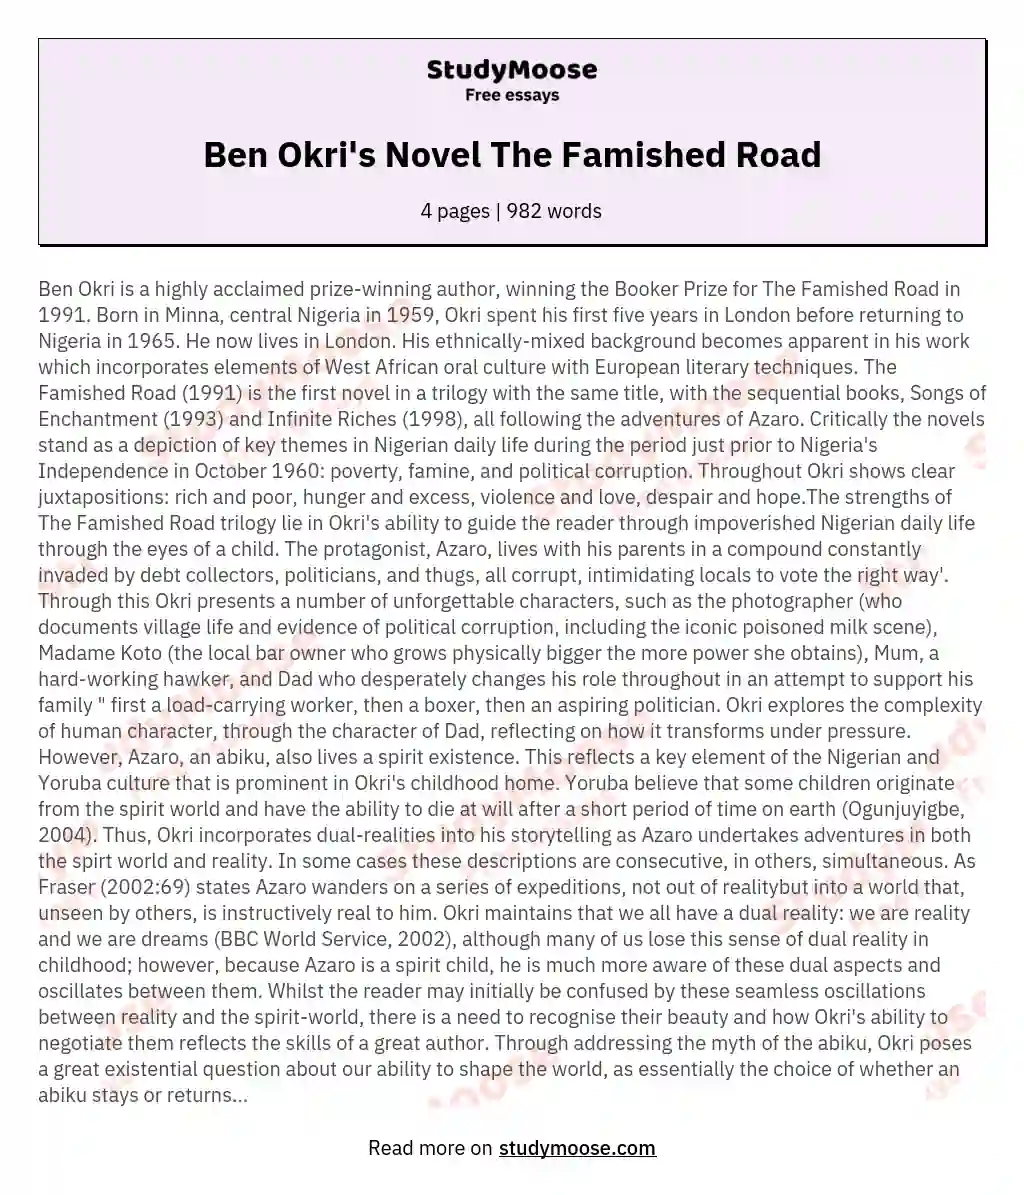 Ben Okri's Novel The Famished Road essay